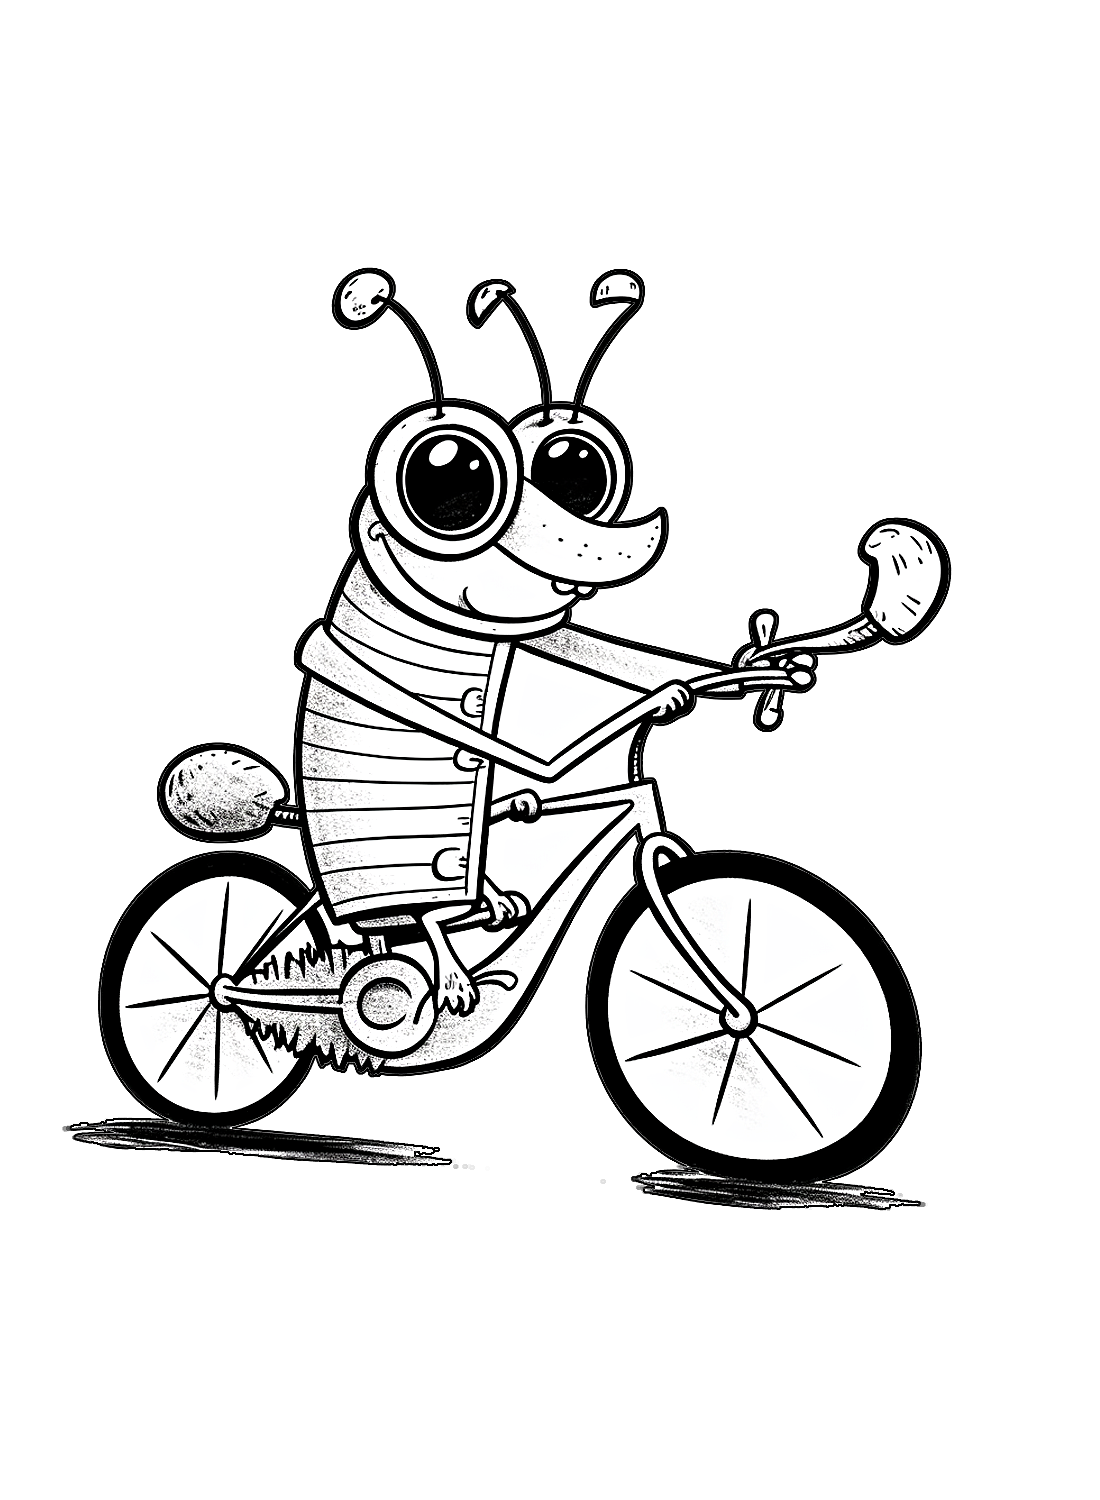 一只有趣的蟑螂和一辆来自蟑螂的自行车